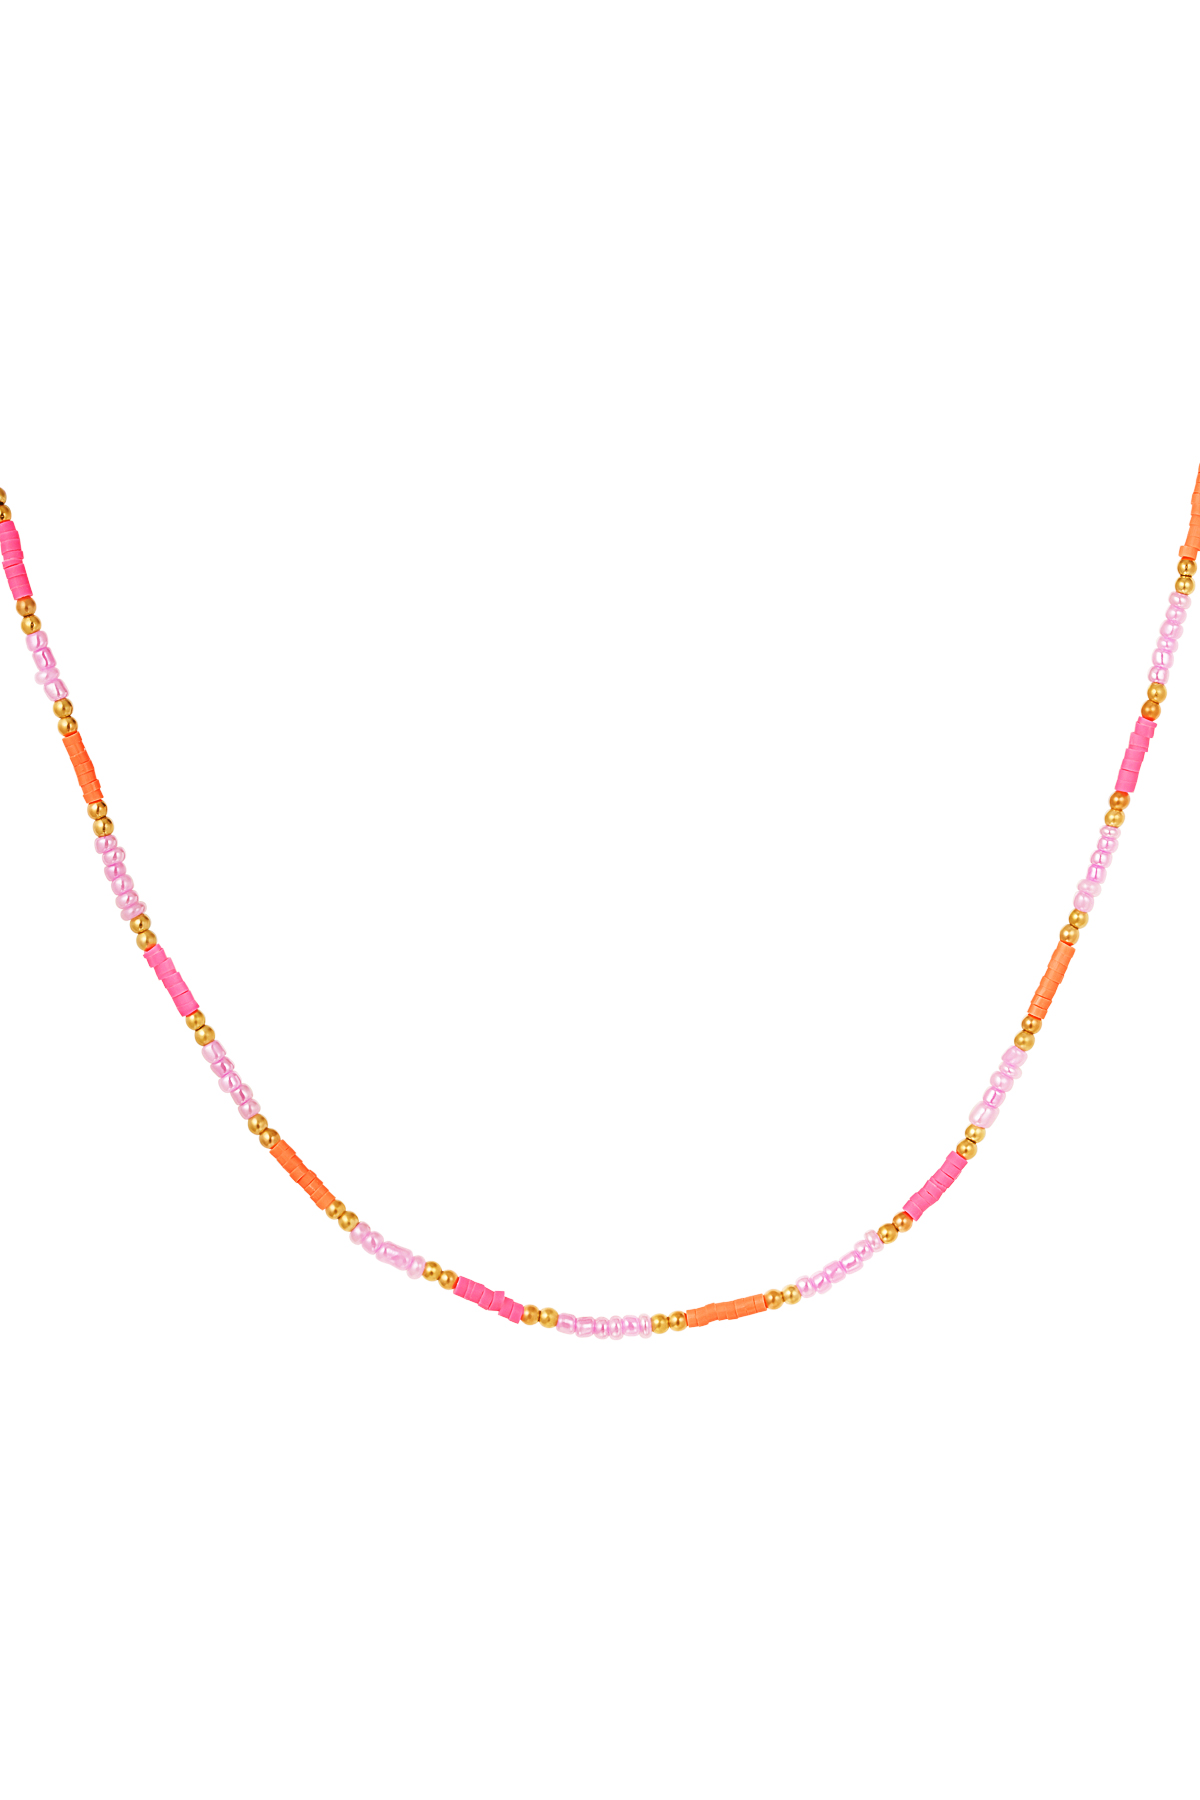 Collana piccole perle colorate - rosa/arancione h5 